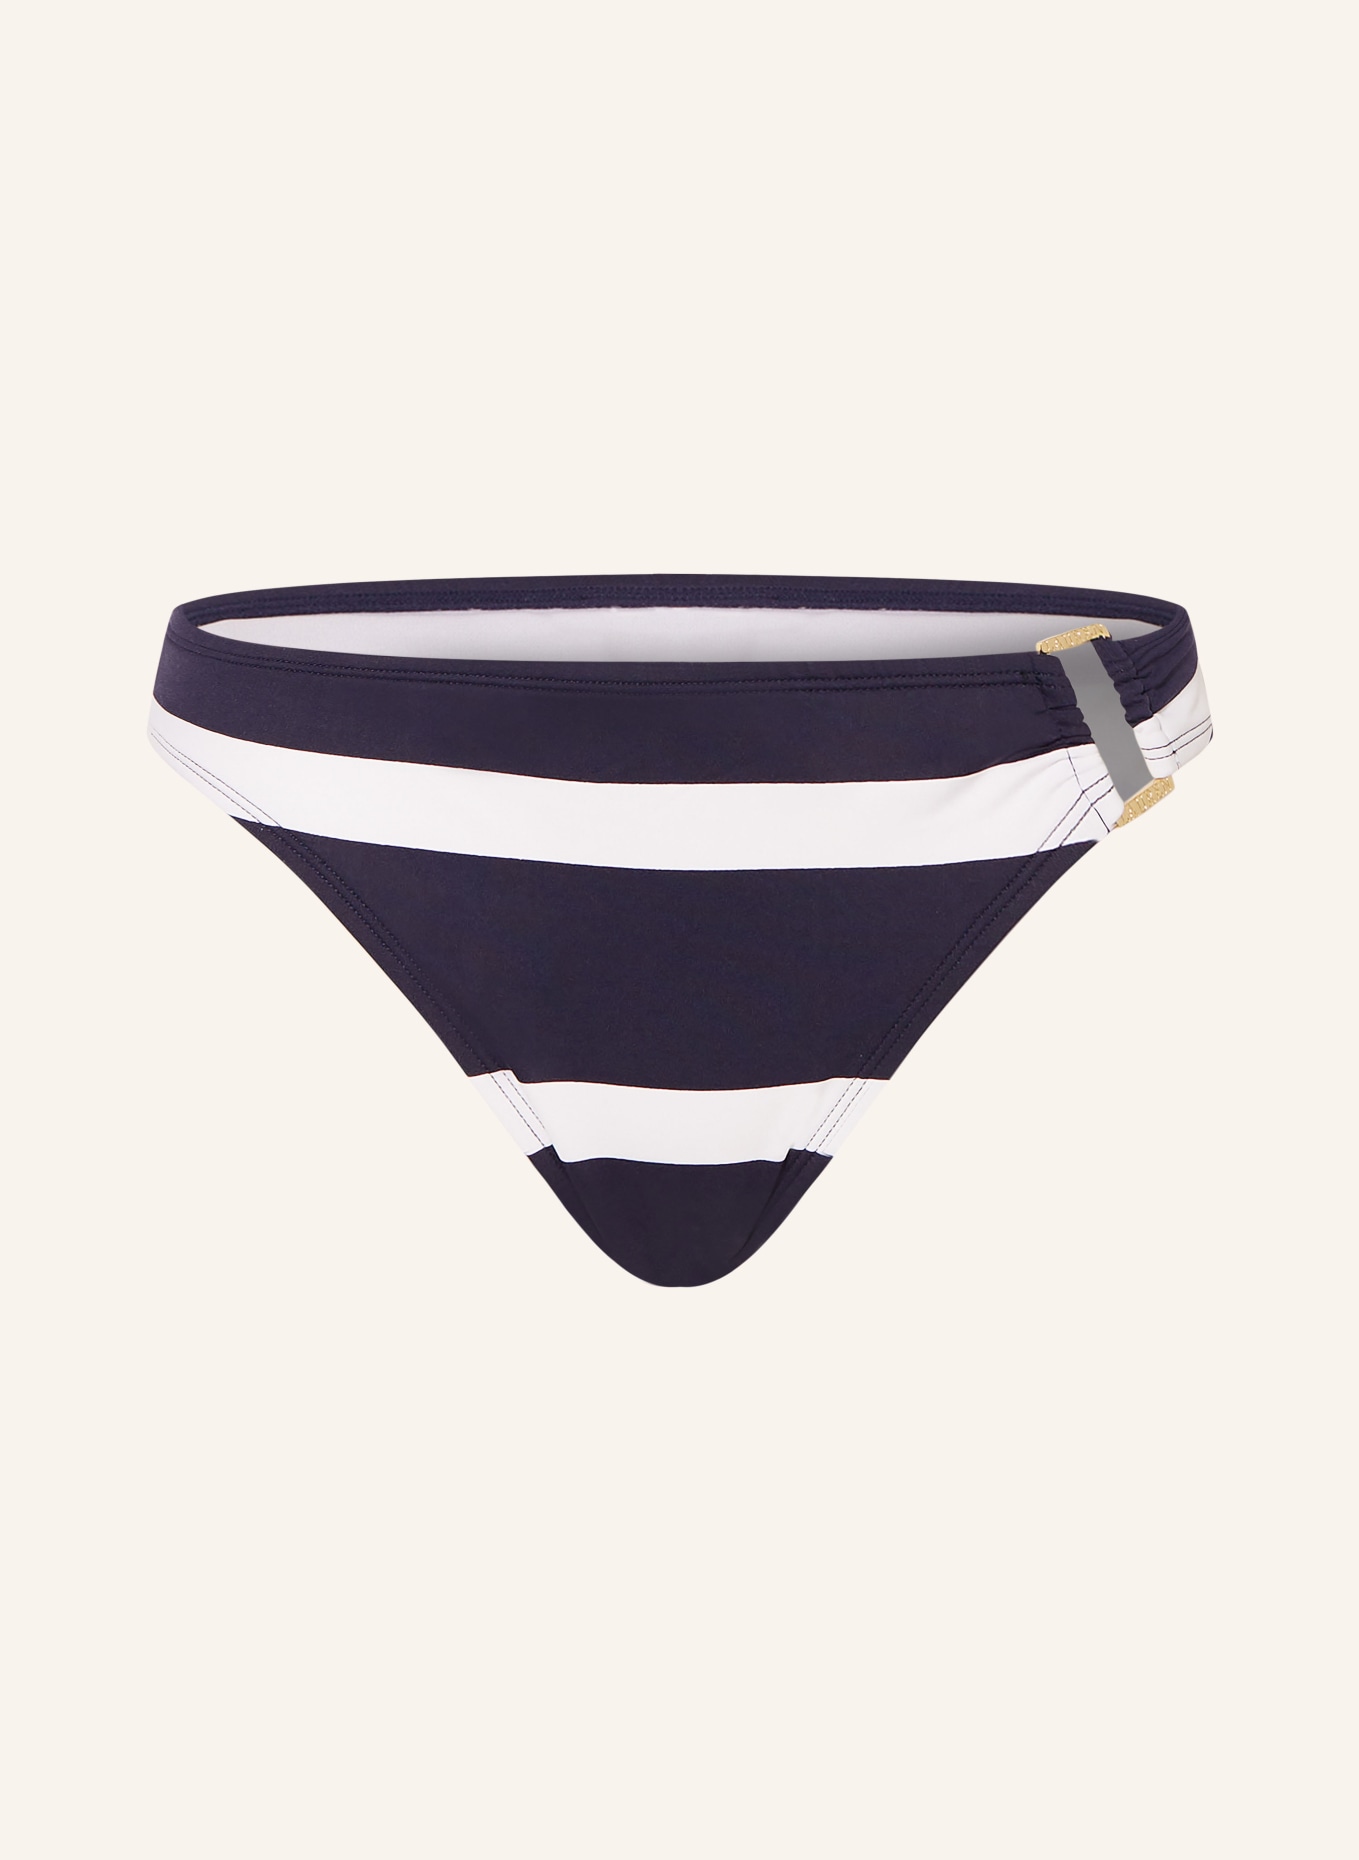 LAUREN RALPH LAUREN Basic bikini bottoms MARINER STRIPE, Color: DARK BLUE/ WHITE (Image 1)